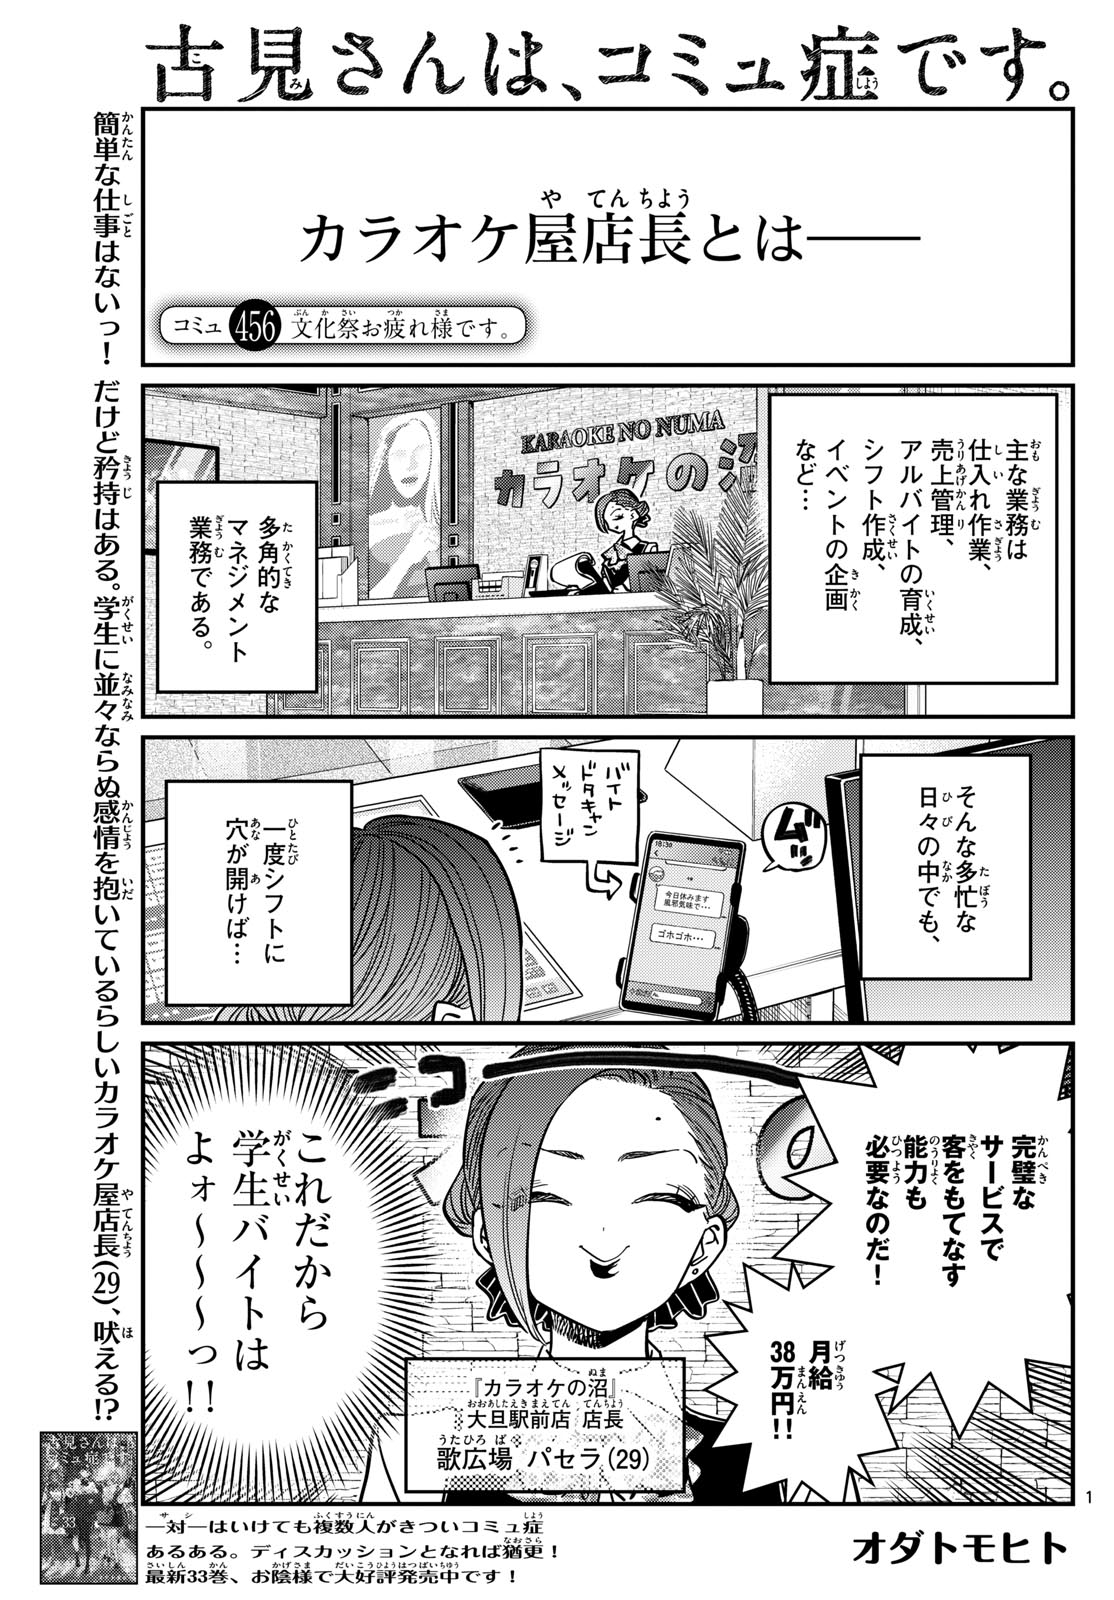 Komi-san wa Komyushou Desu - Chapter 456 - Page 1